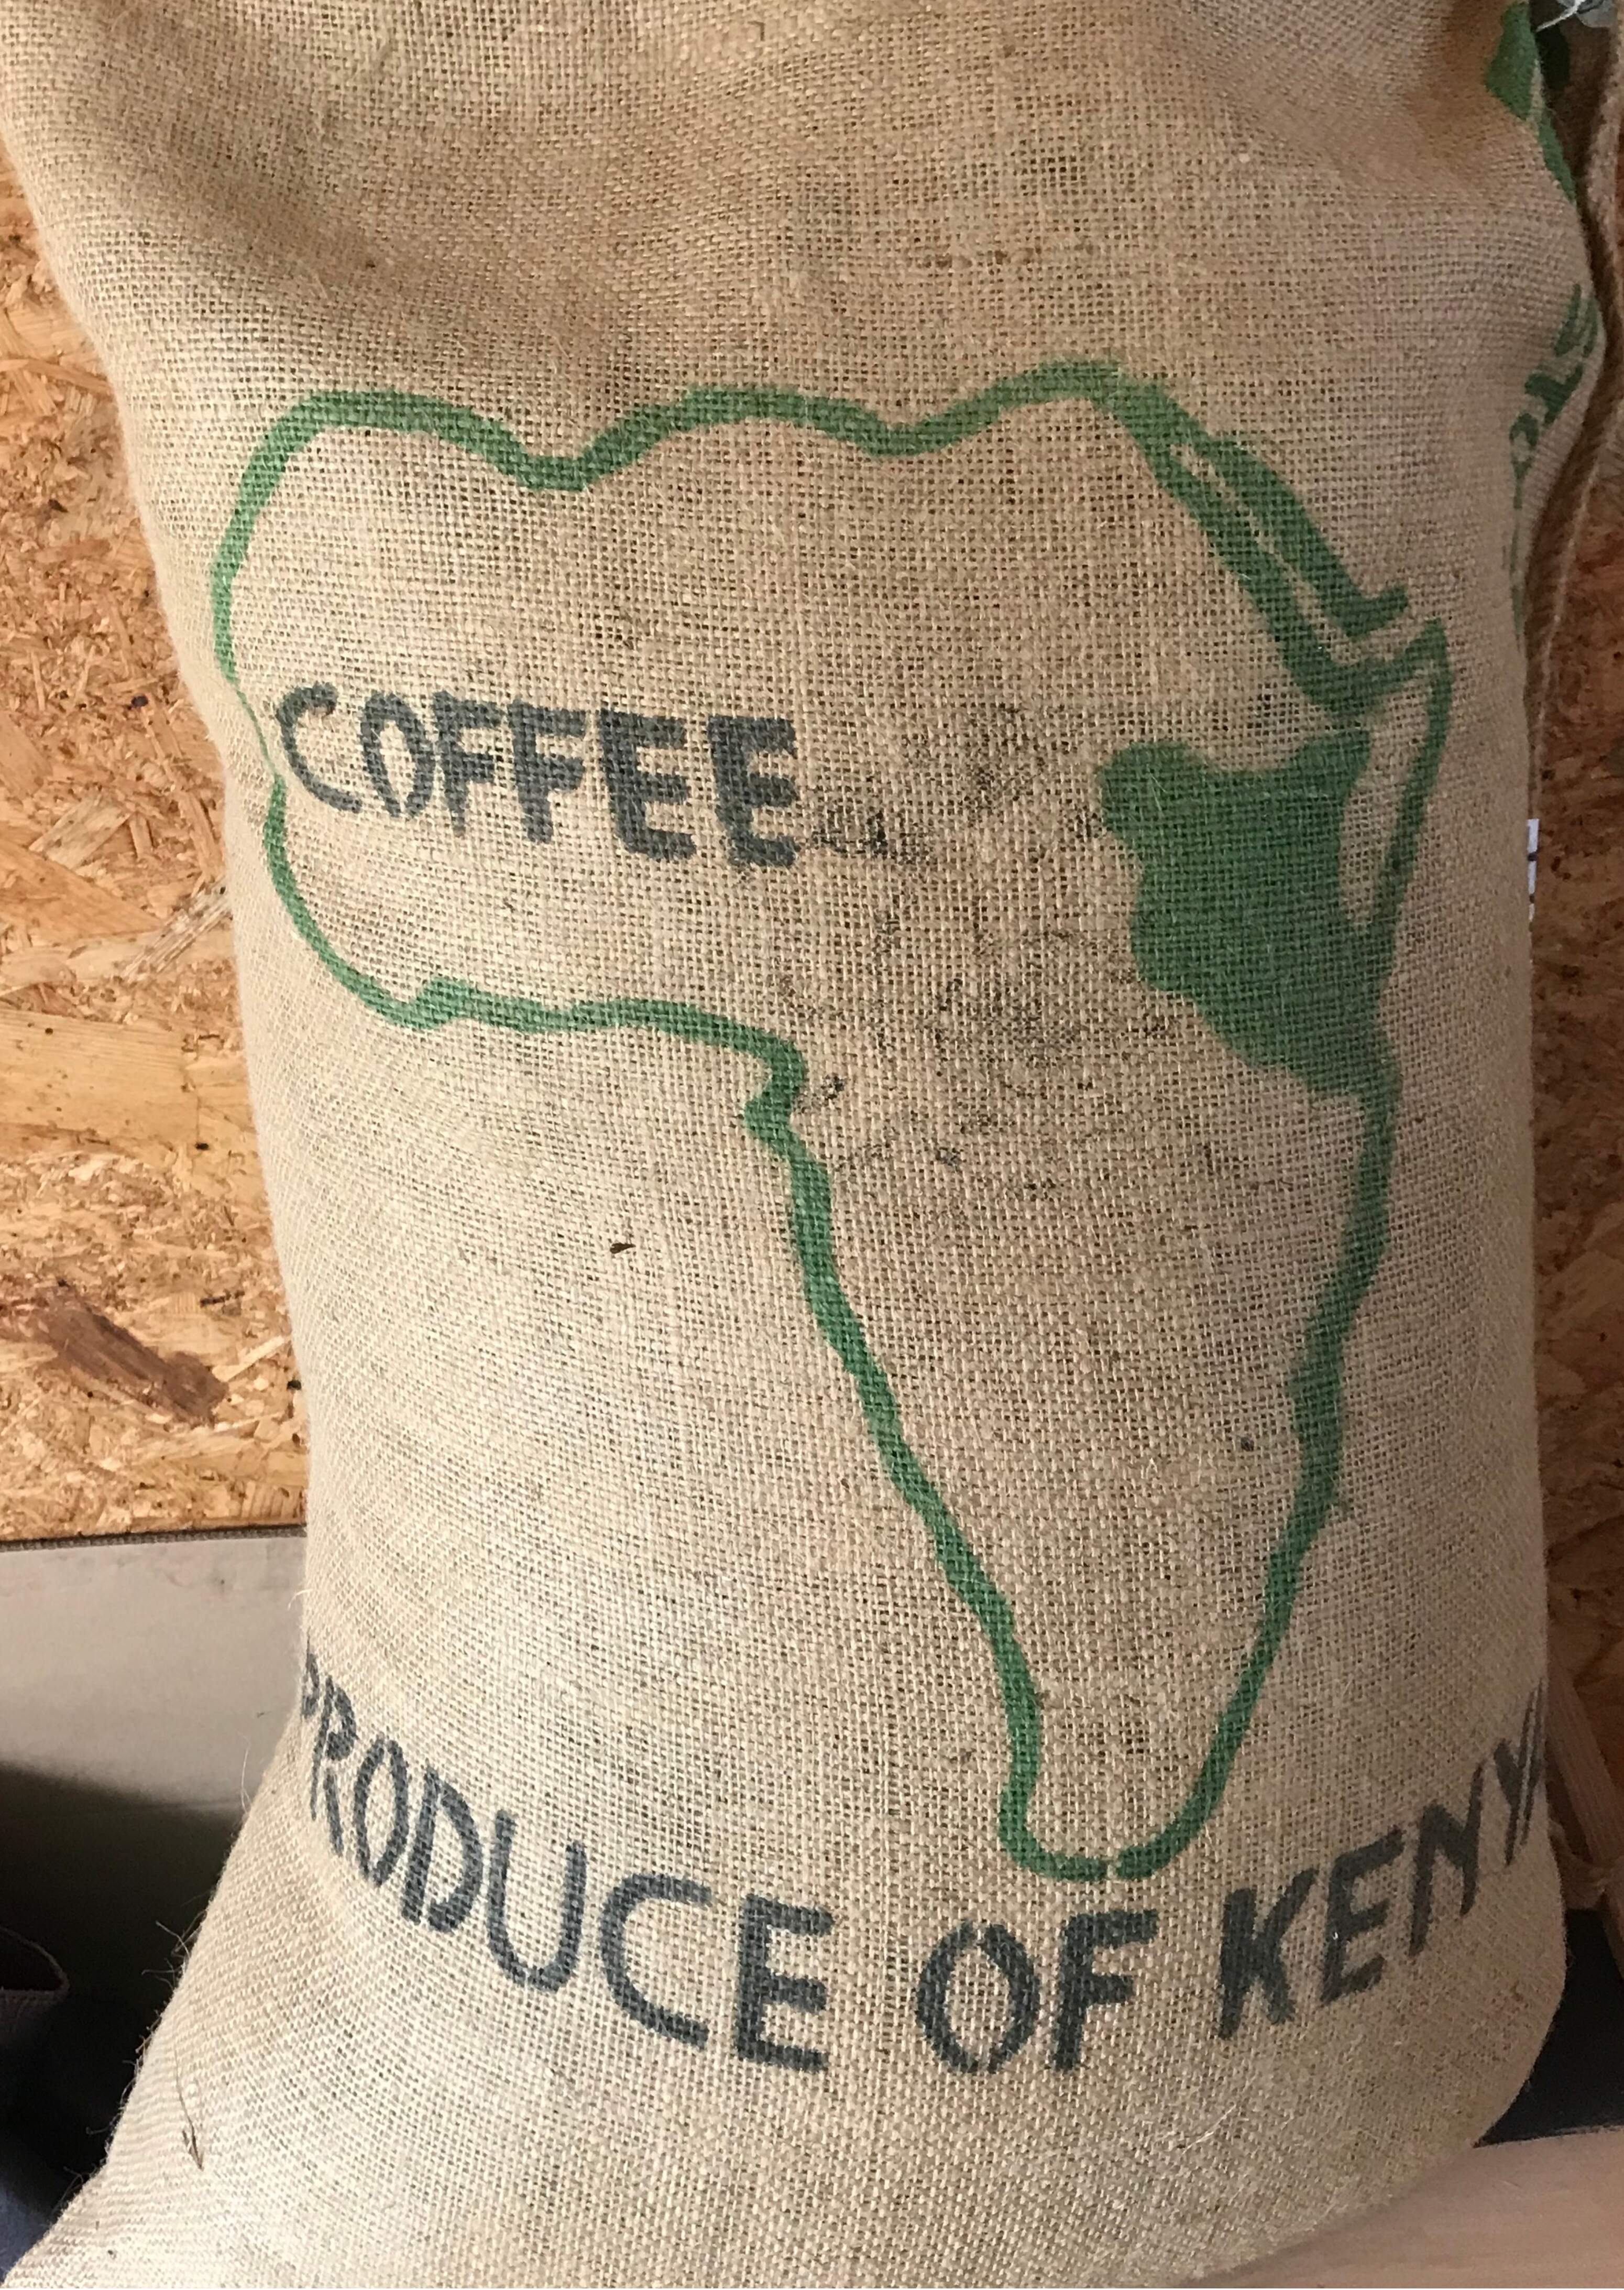 La coltivazione del caffè in Kenya: antiche virtù, nuovi problemi